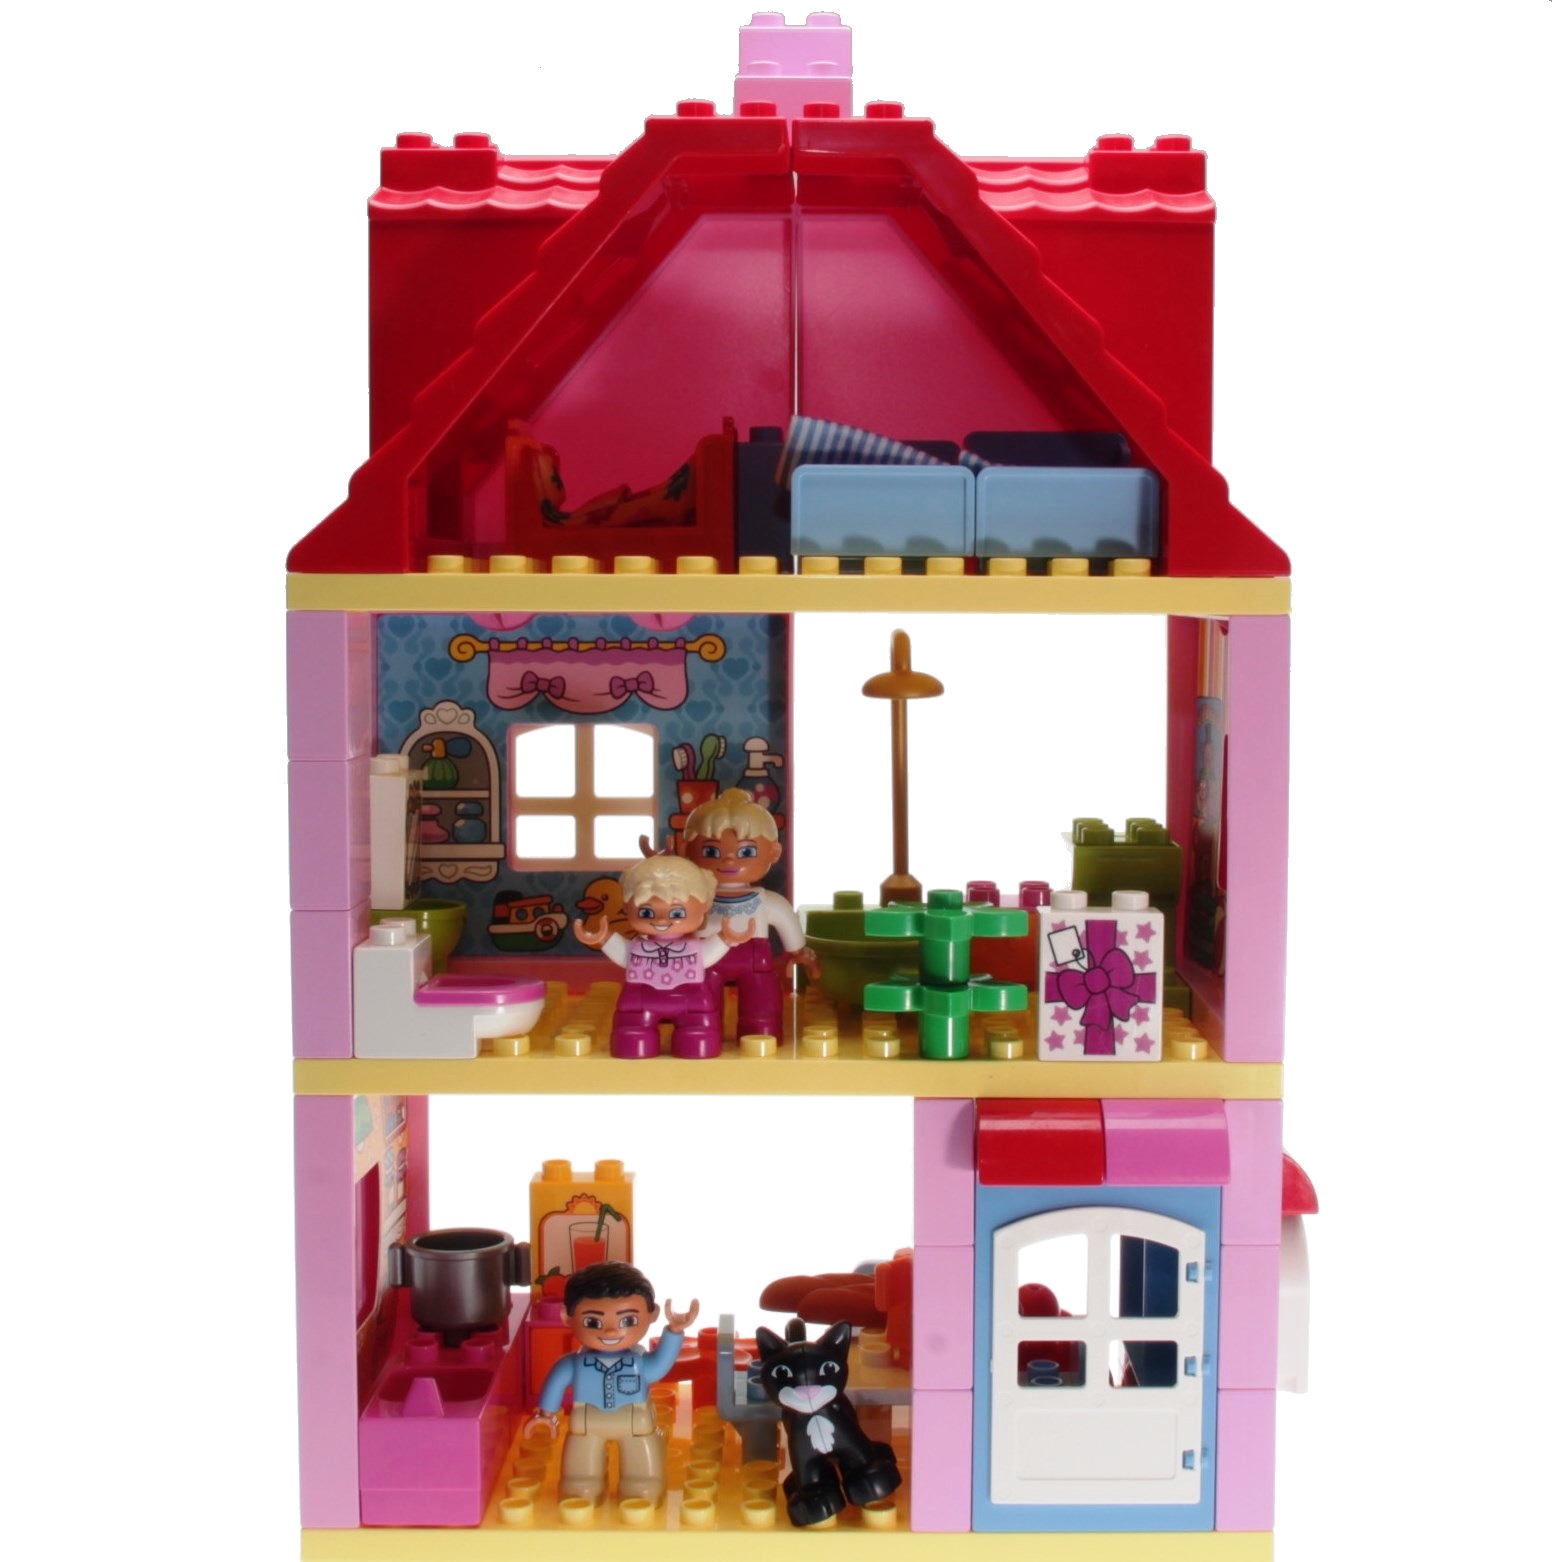 LEGO Duplo 10505 - House - DECOTOYS